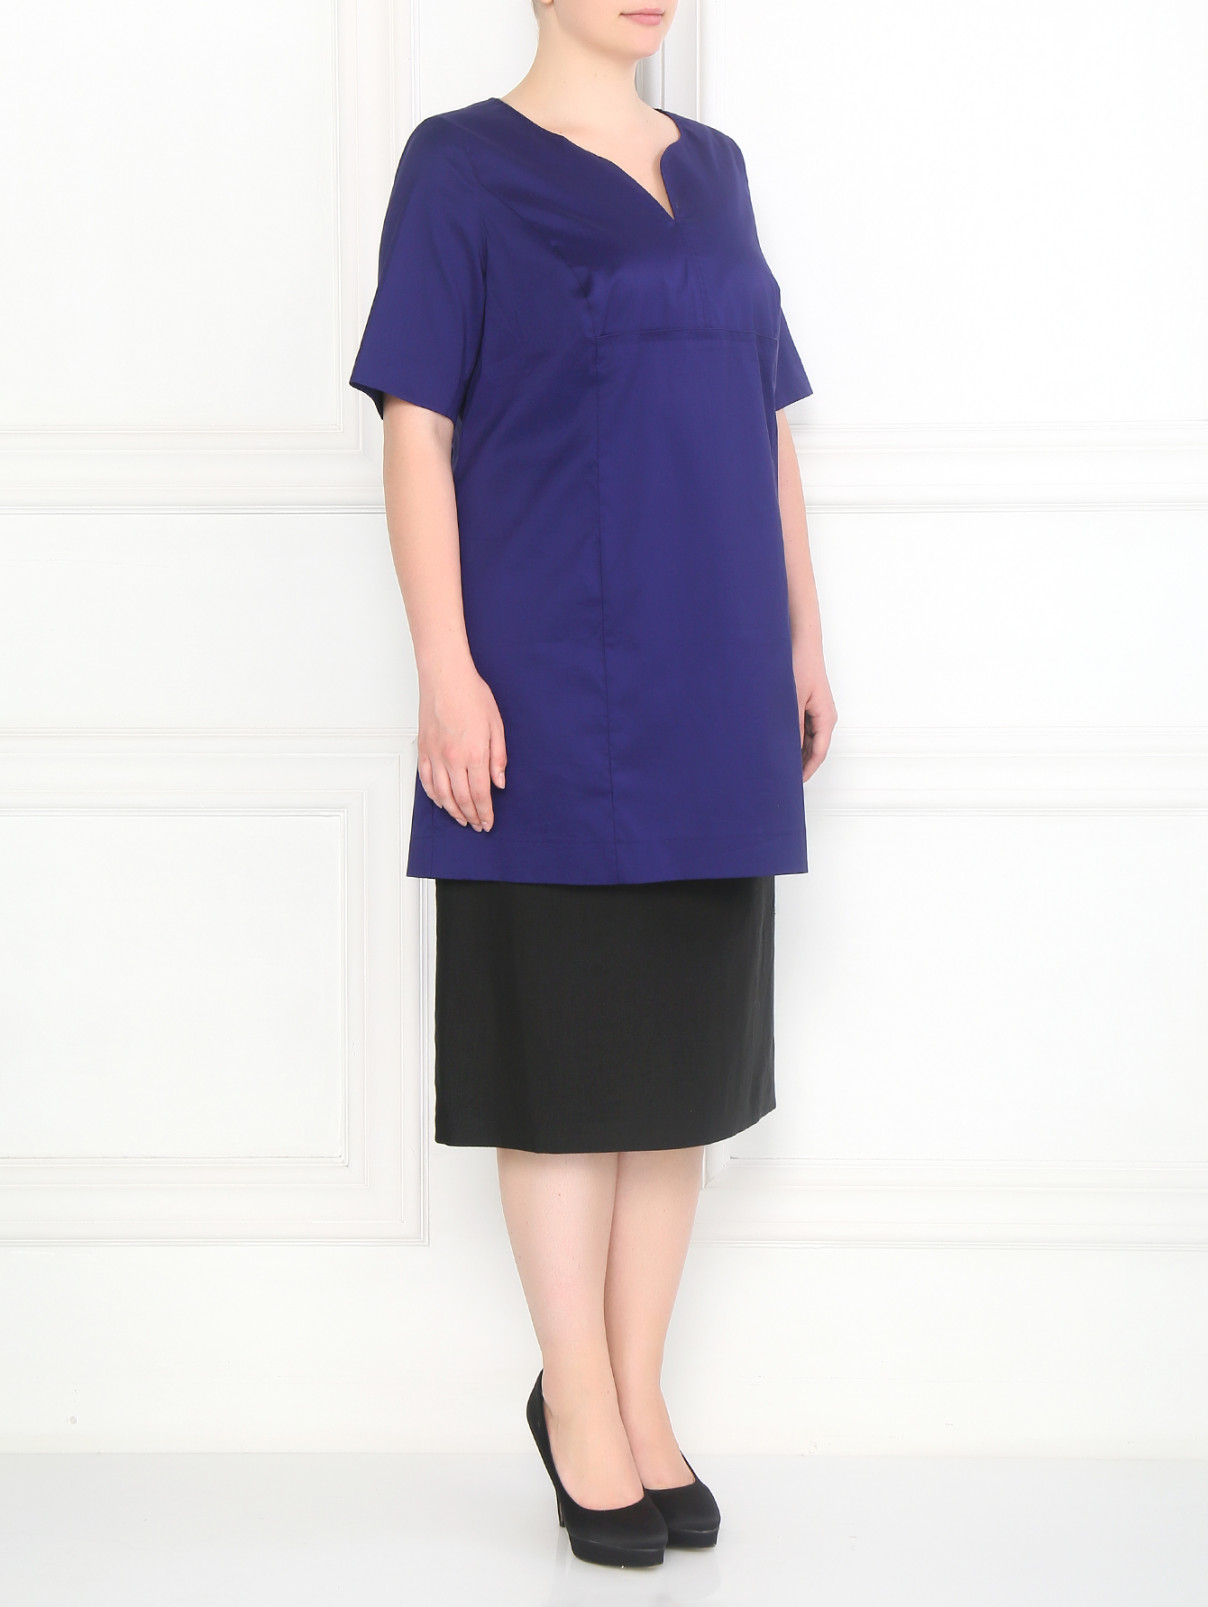 Блуза из хлопка Marina Rinaldi  –  Модель Общий вид  – Цвет:  Фиолетовый